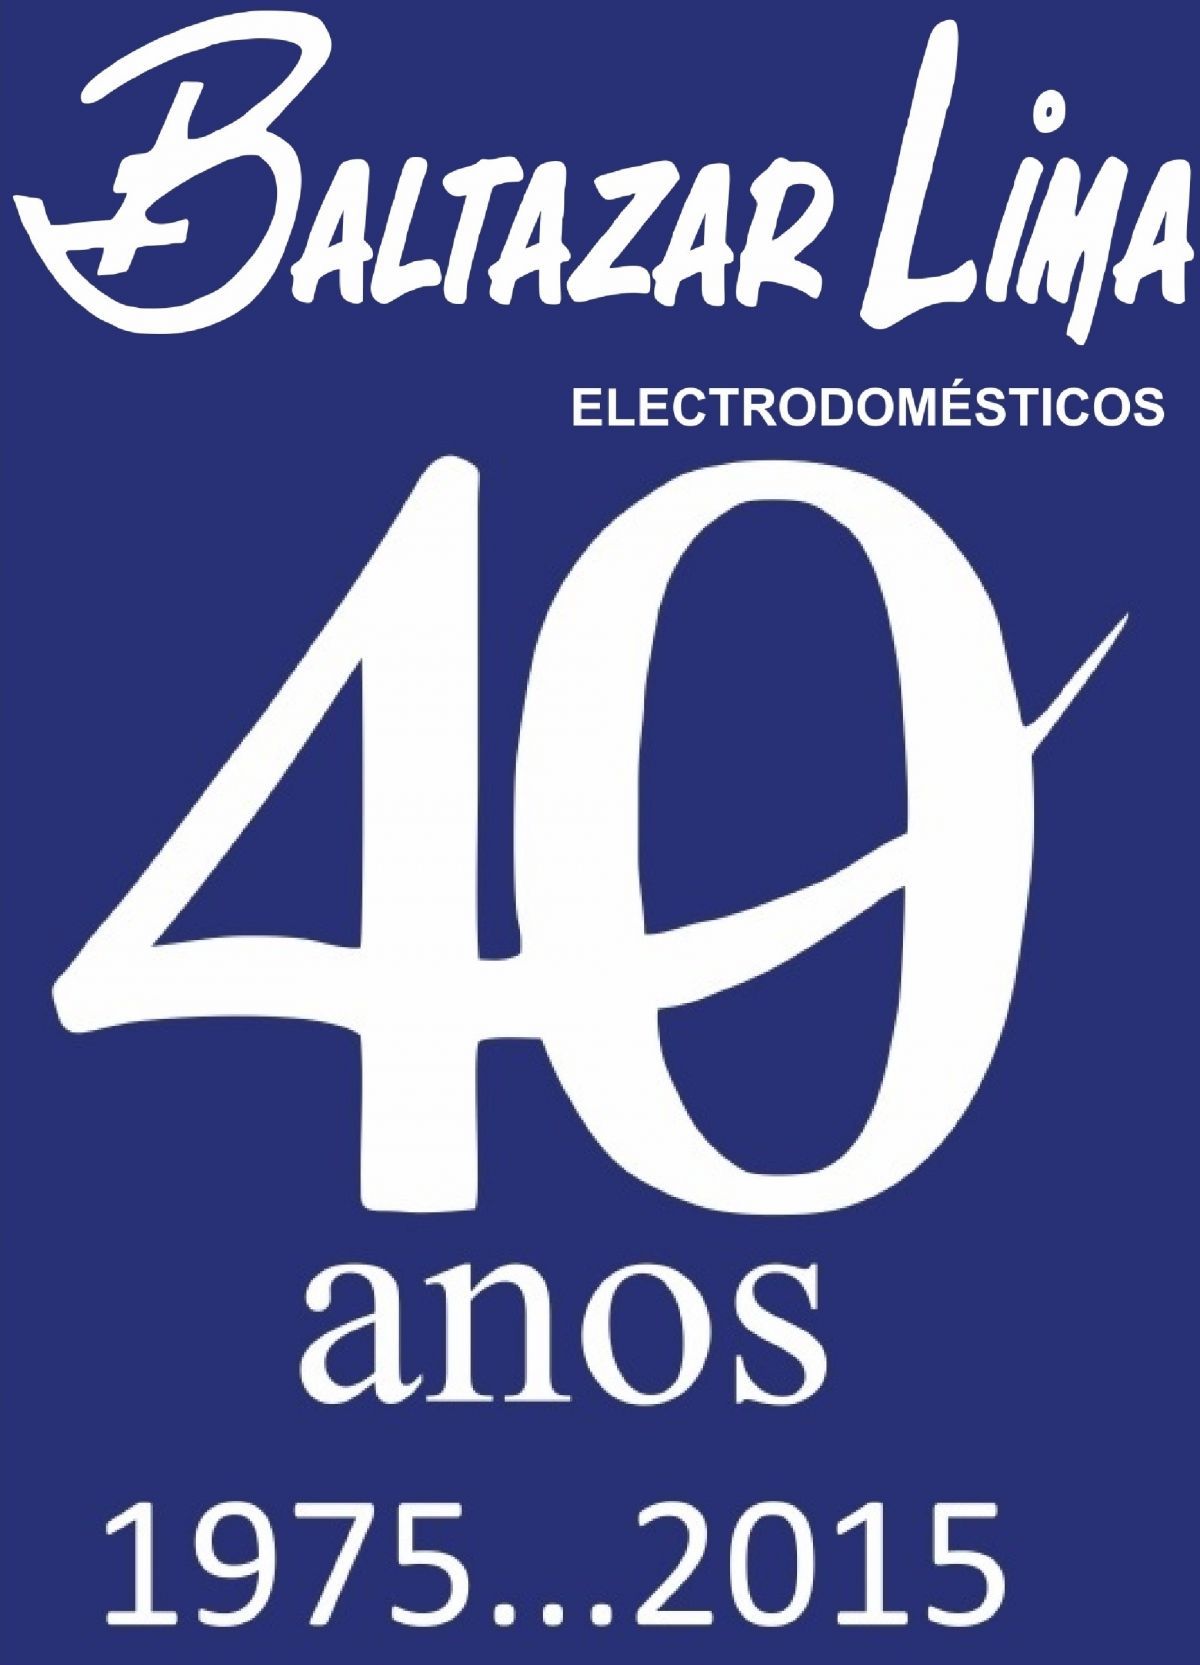 Baltazar Lima Electrodomésticos - Ponte de Lima - Reparação de Telemóvel ou Tablet